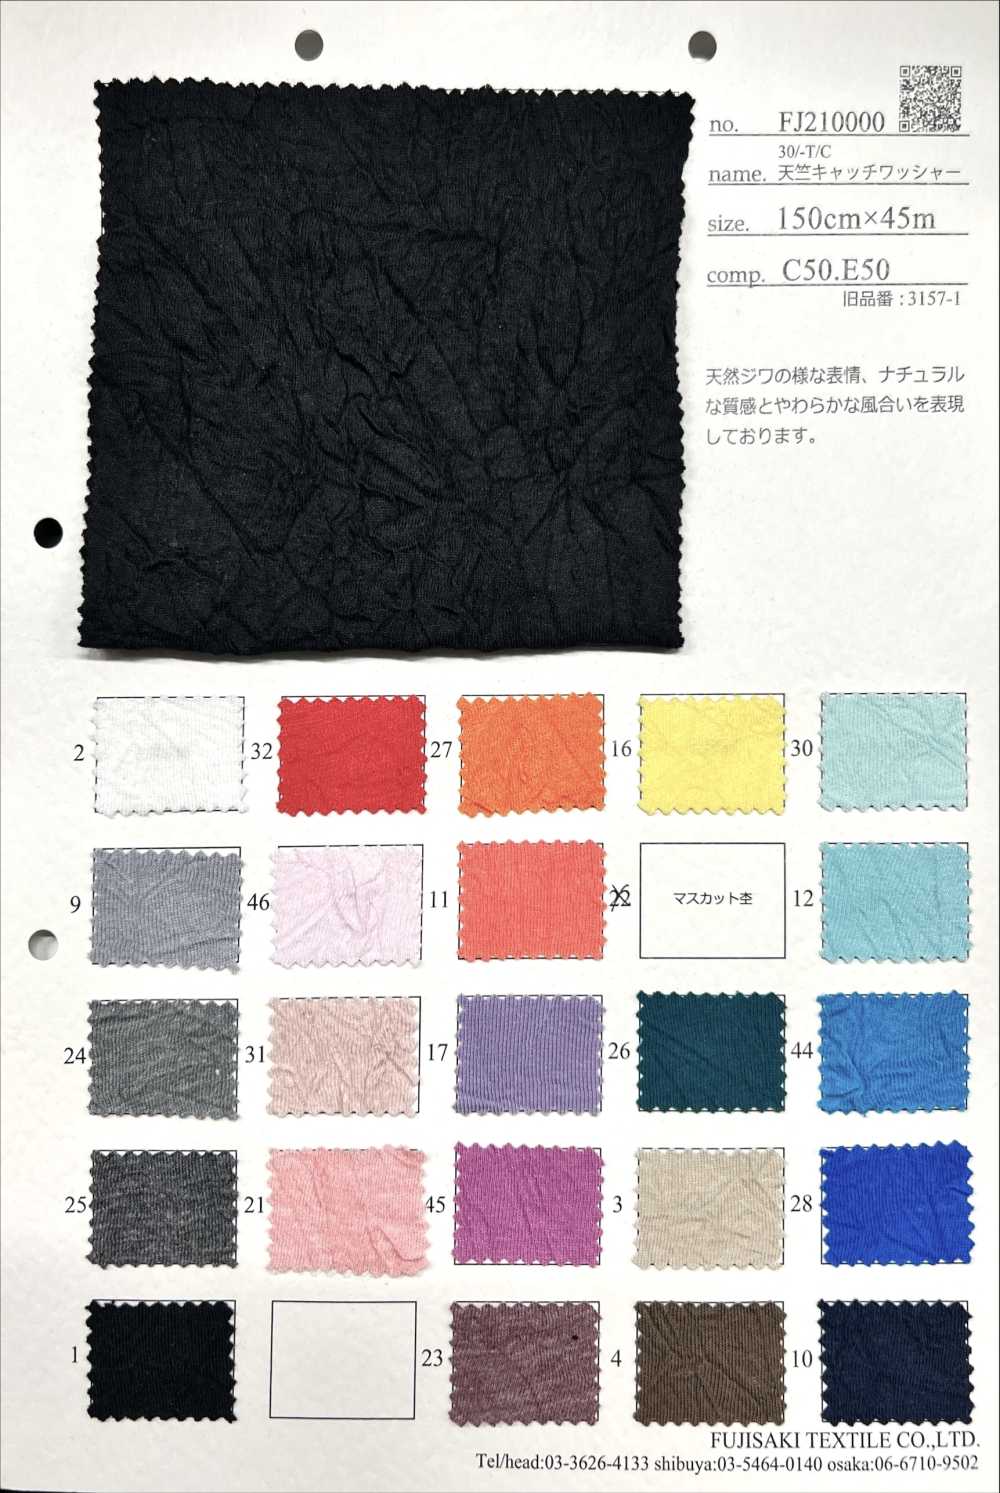 FJ210000 30/-T/C天竺平针织物锁紧水洗加工[面料] Fujisaki Textile